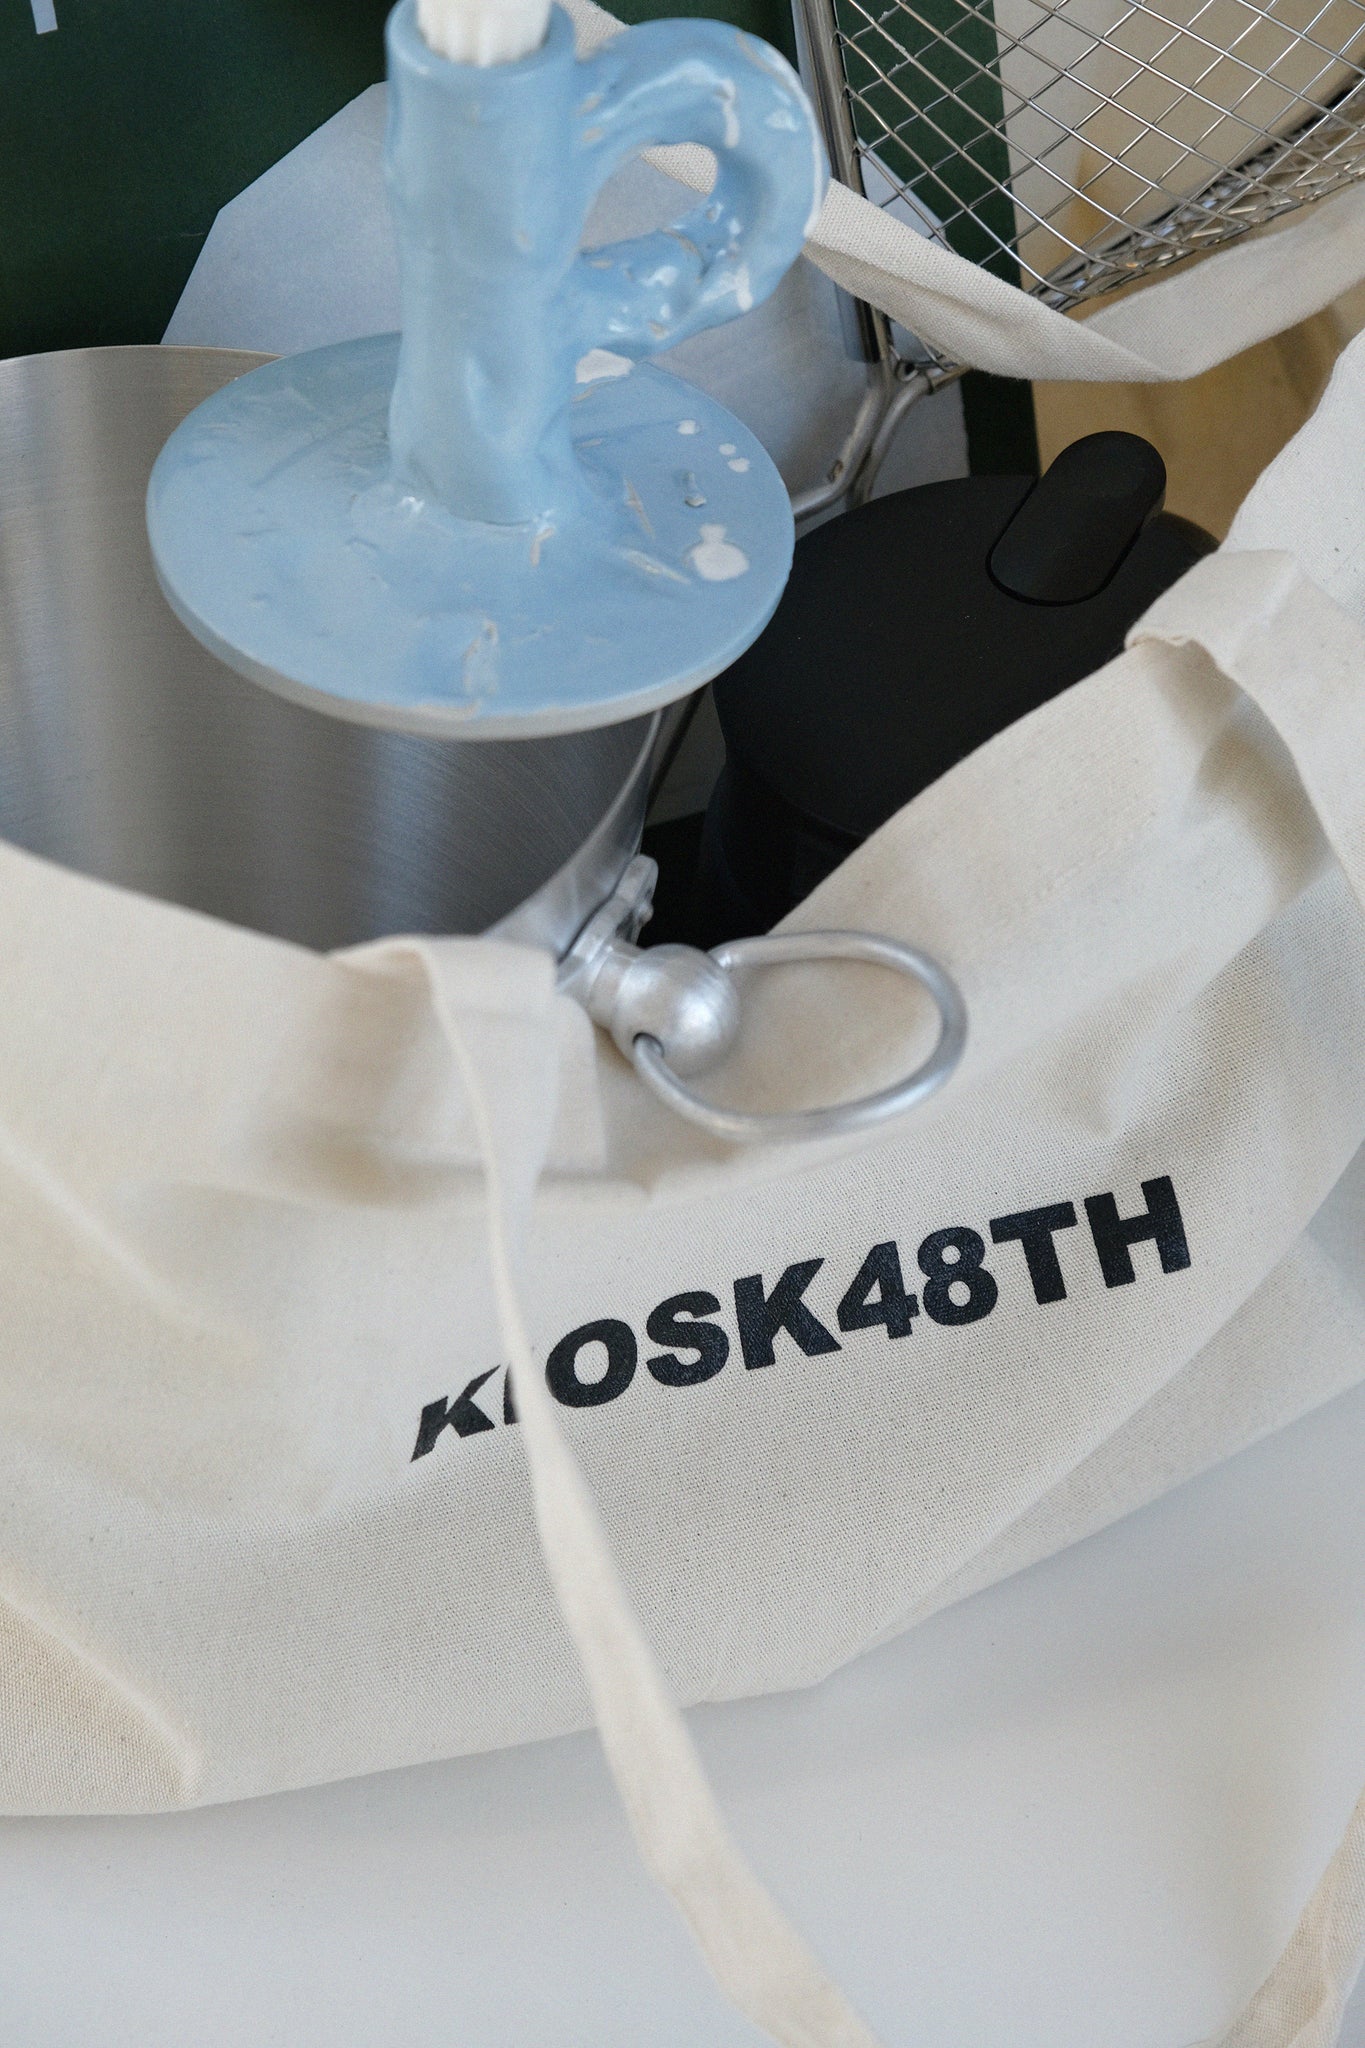 Market bag-KIOSK48TH-KIOSK48TH